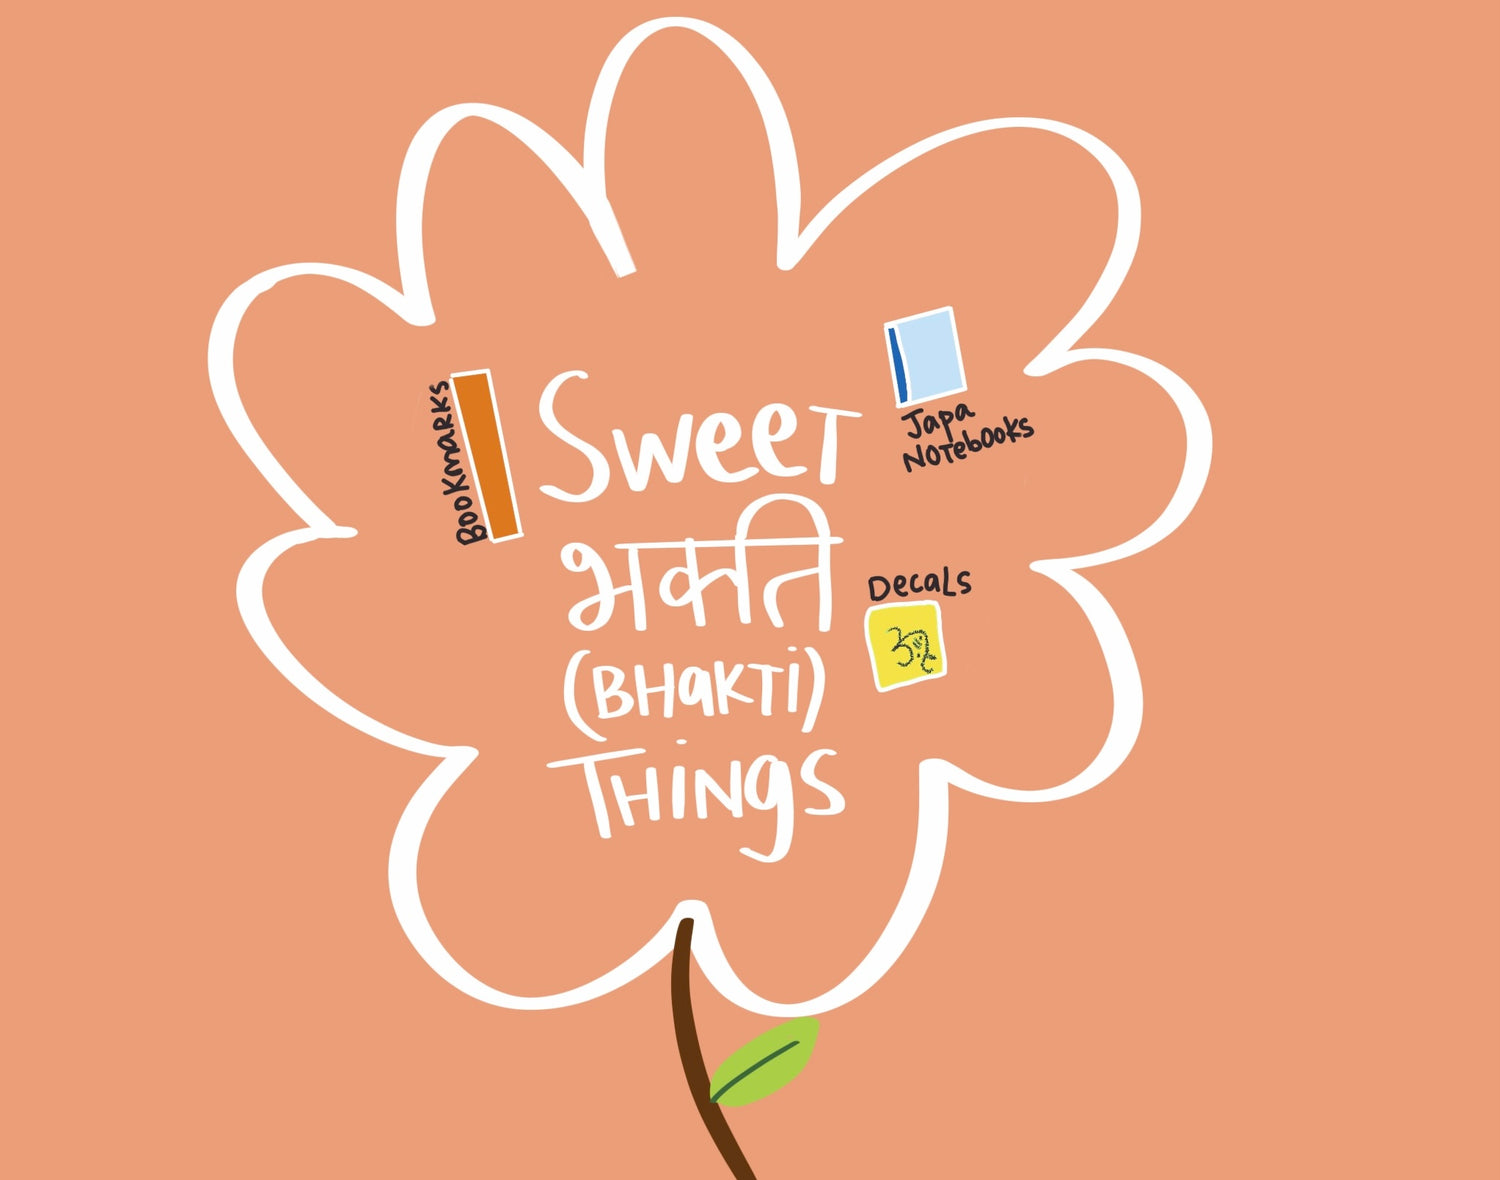 Sweet Bhakti Things